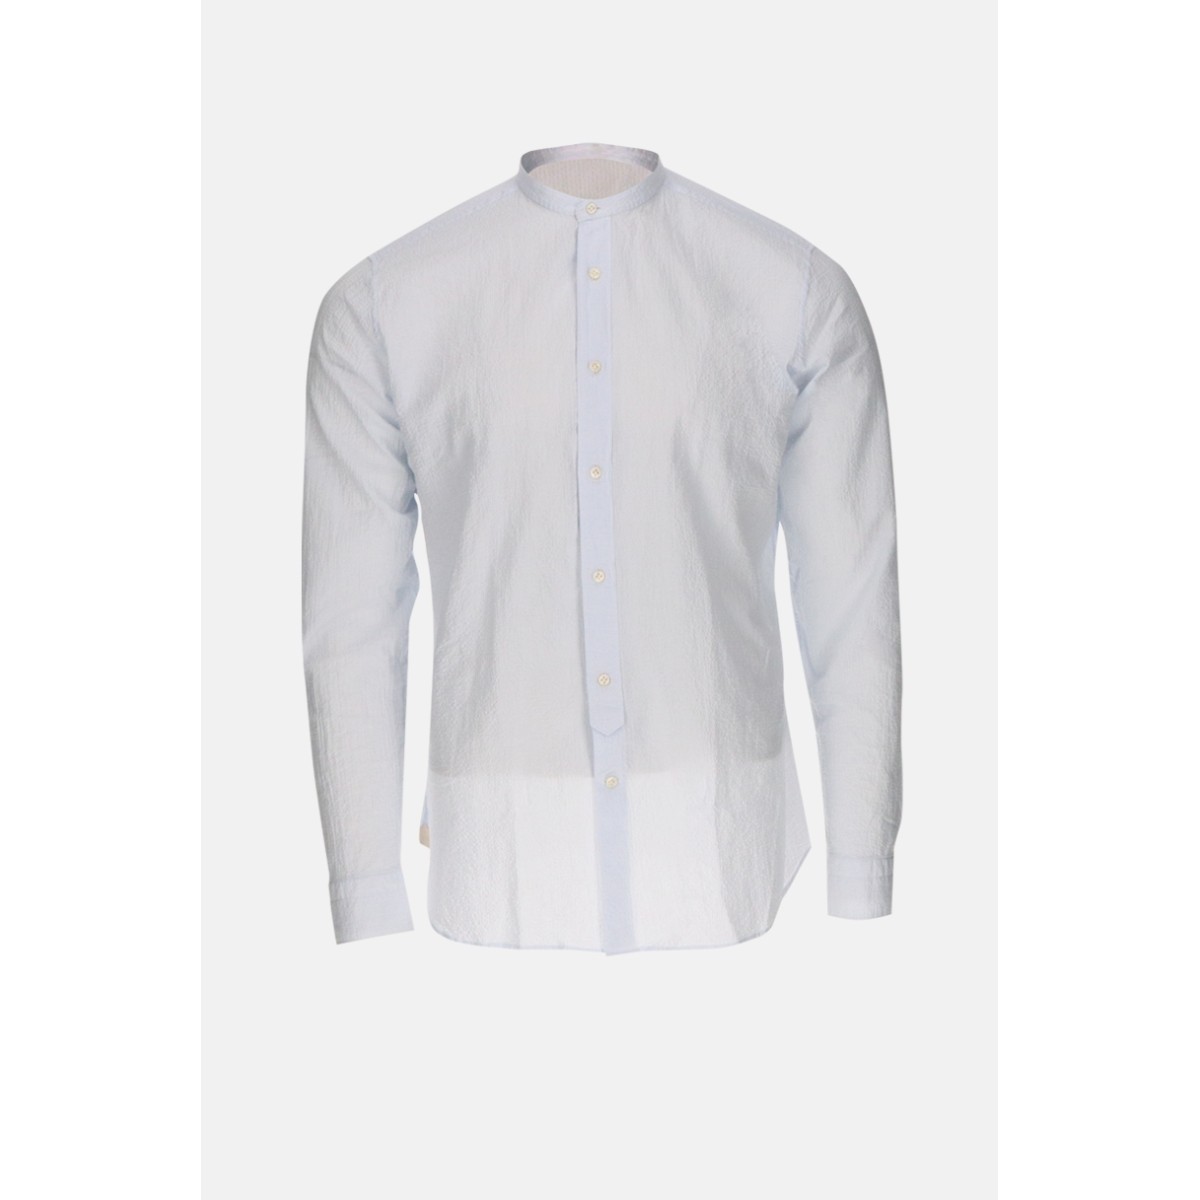 Tintoria Mattei long-sleeved shirt